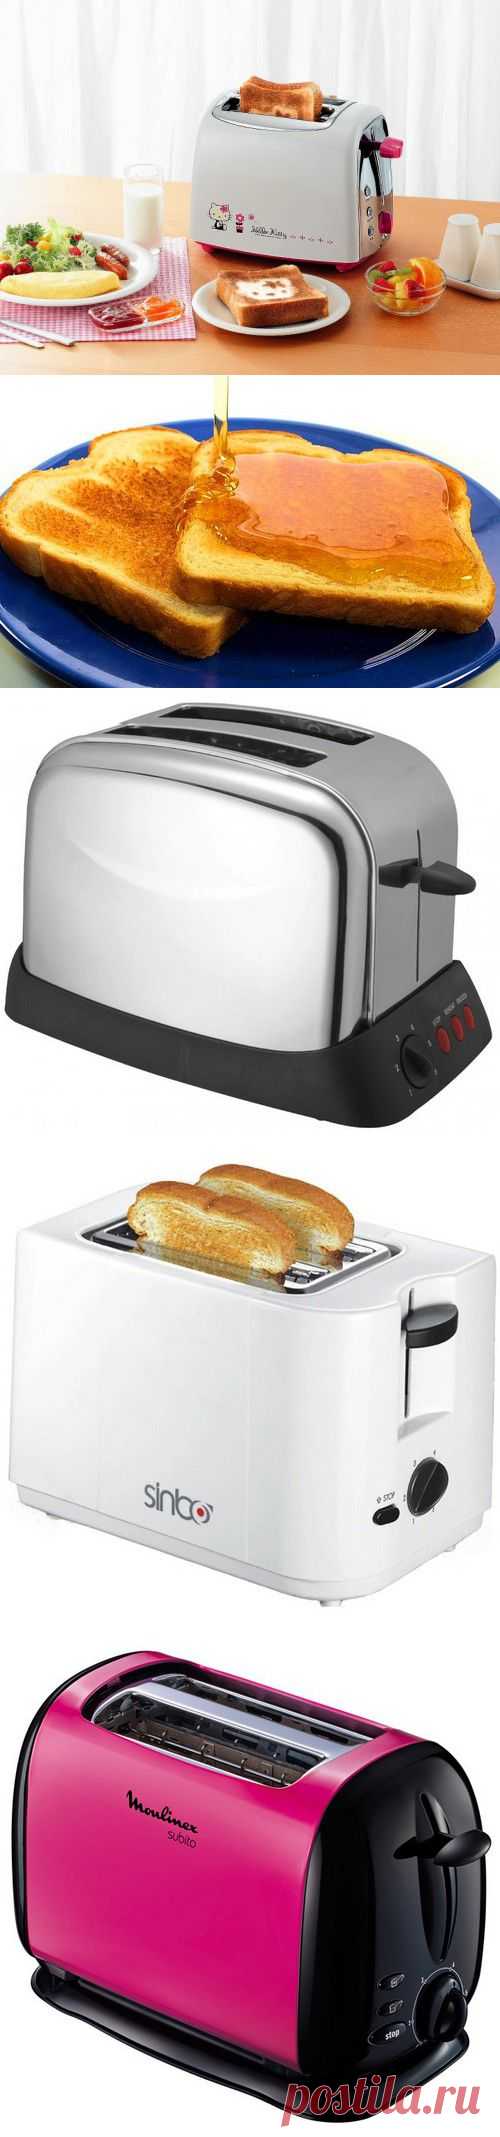 (+1) тема - Как выбрать тостер: технические и функциональные особенности устройства | ПРАВИЛЬНО выбираем бытовую технику